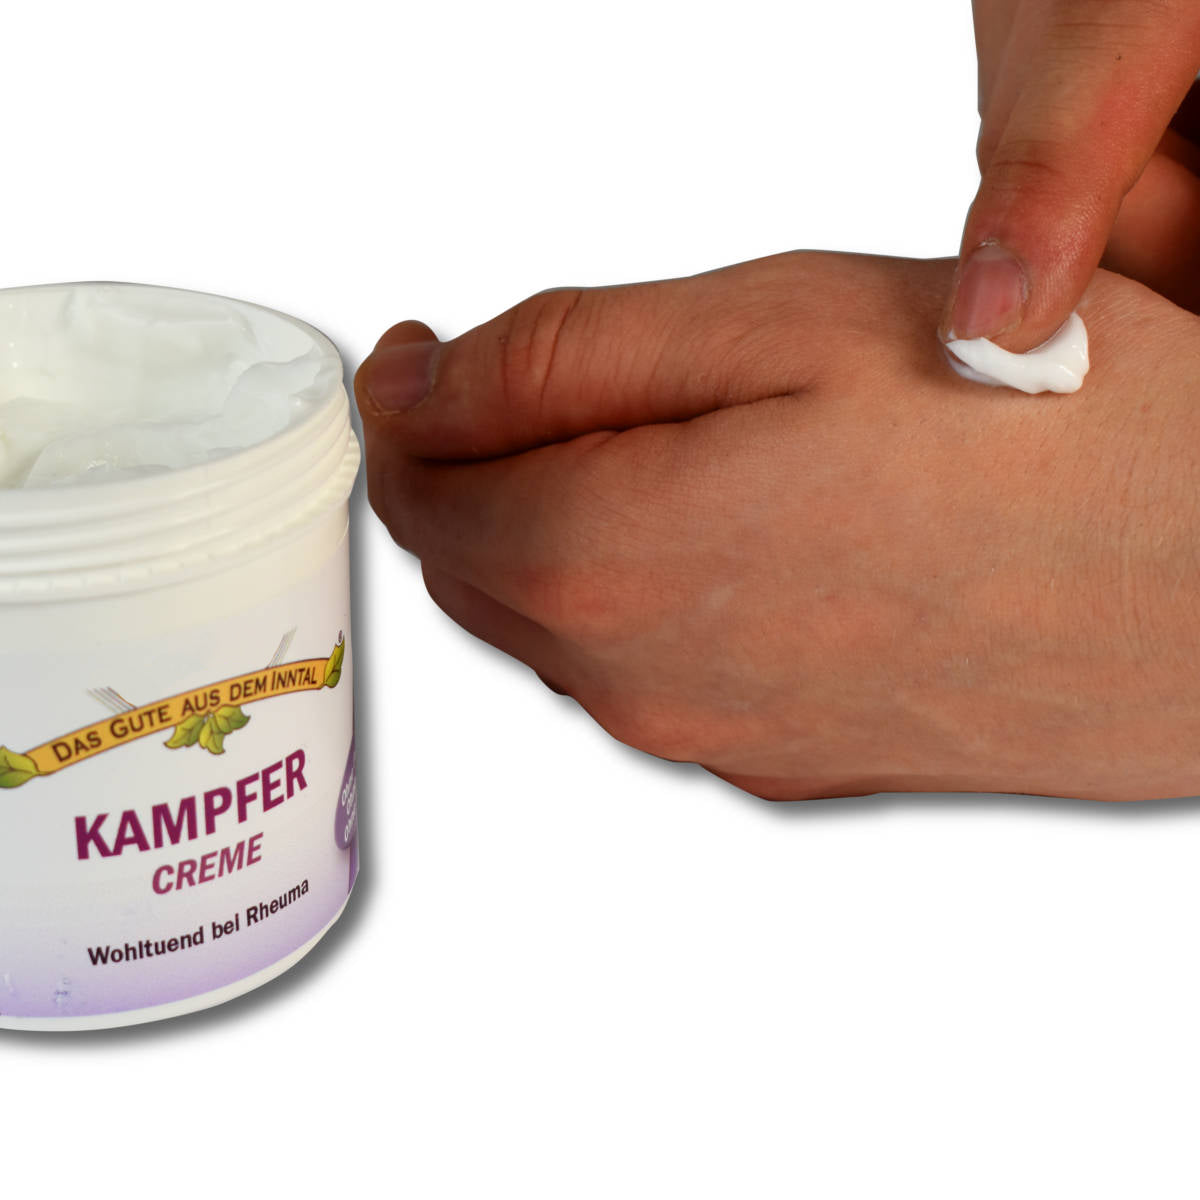 Kampfer Creme 2er-Vorteilspack inklusive Baumwolltuch | 2 x 200 ml Pflege bei Rheuma &amp; Entzündung| Handarbeit aus Deutschland